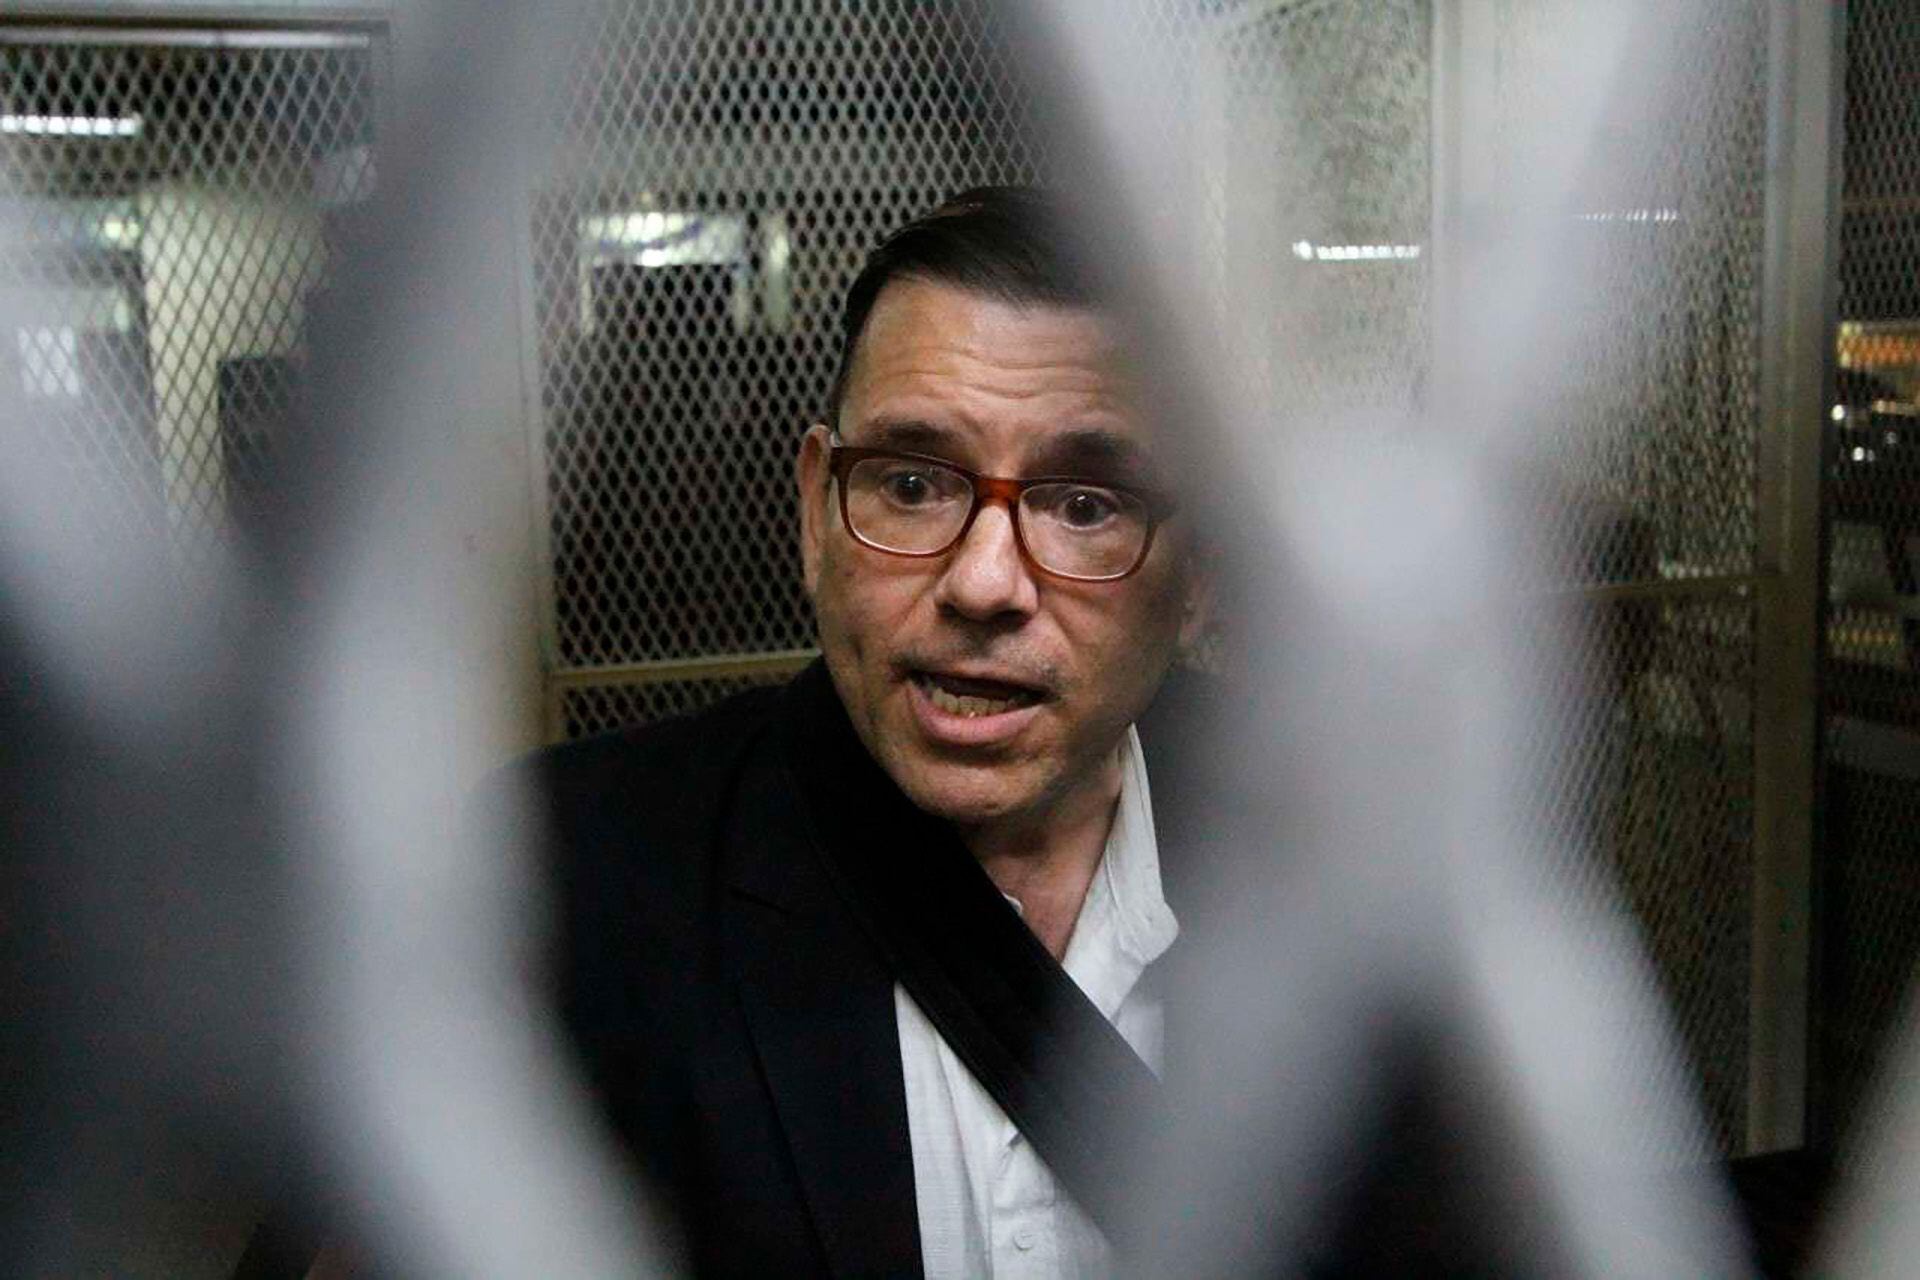 Fotos nota GuatemalaEx candidato presidencial condenado en Estados Unidos por lavado de dinero del narcotráfico. Fue dejado en libertad en ese país y deportado a Guatemala, donde ha sido favorecido por la justicia.